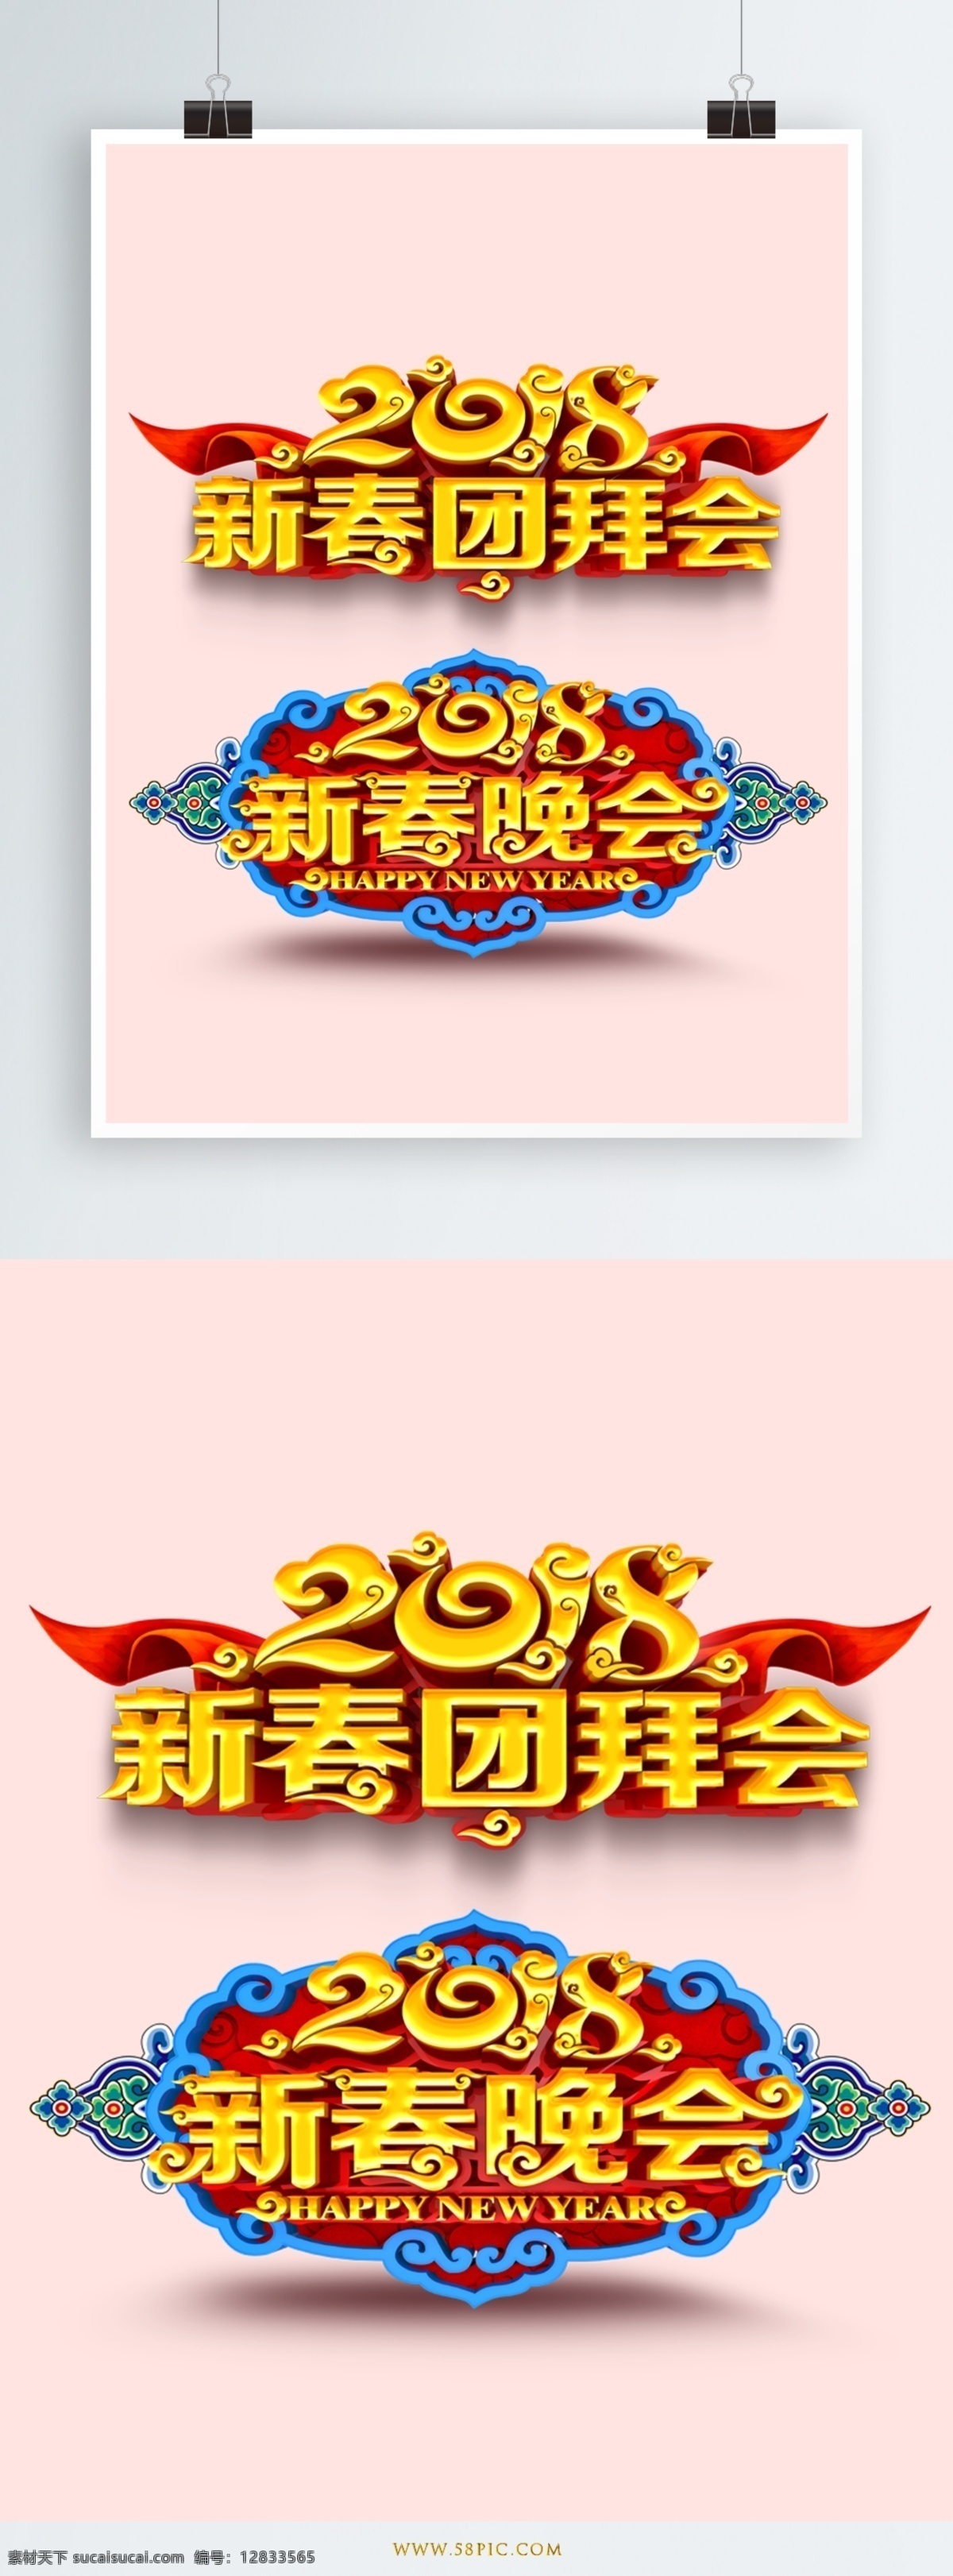 2018 新春 晚会 艺术 字 字体设计 立体字 节日 喜庆 红色丝带 金色字体 新年元素